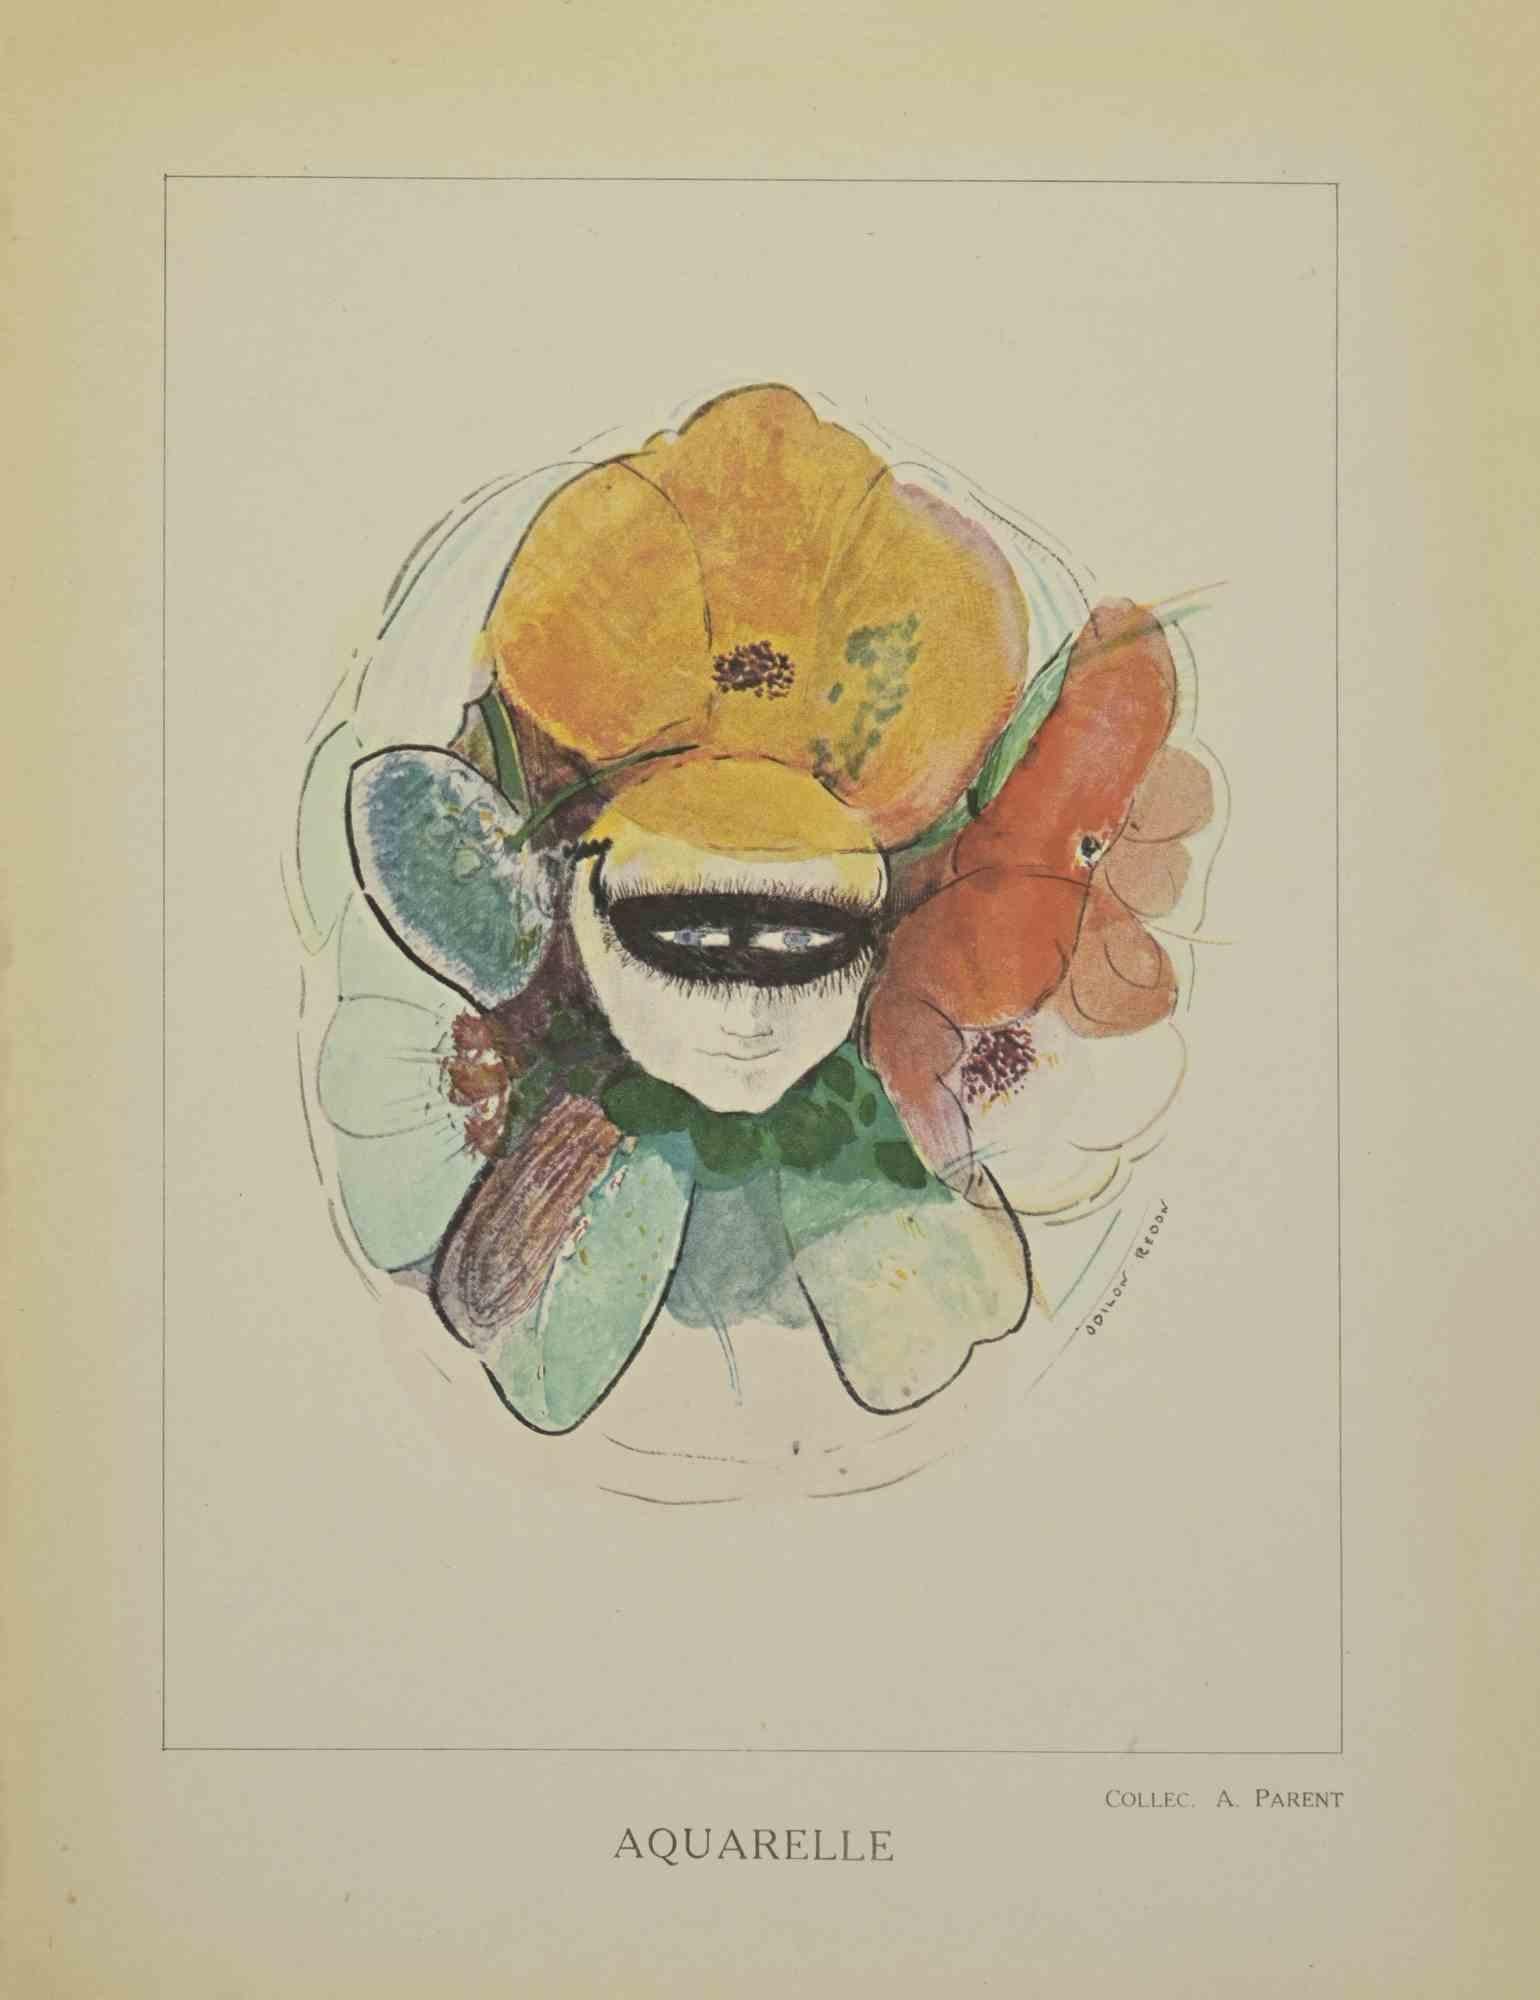 Anémone Humaine Fleurs est une lithographie réalisée d'après une aquarelle d'Odilon Redon. 

Elle appartient à la suite "Odilon Redon Peintre, Dessinateur et Graveur", publiée par Henri Felury en 1923.

Bonnes conditions, rousseurs sur les